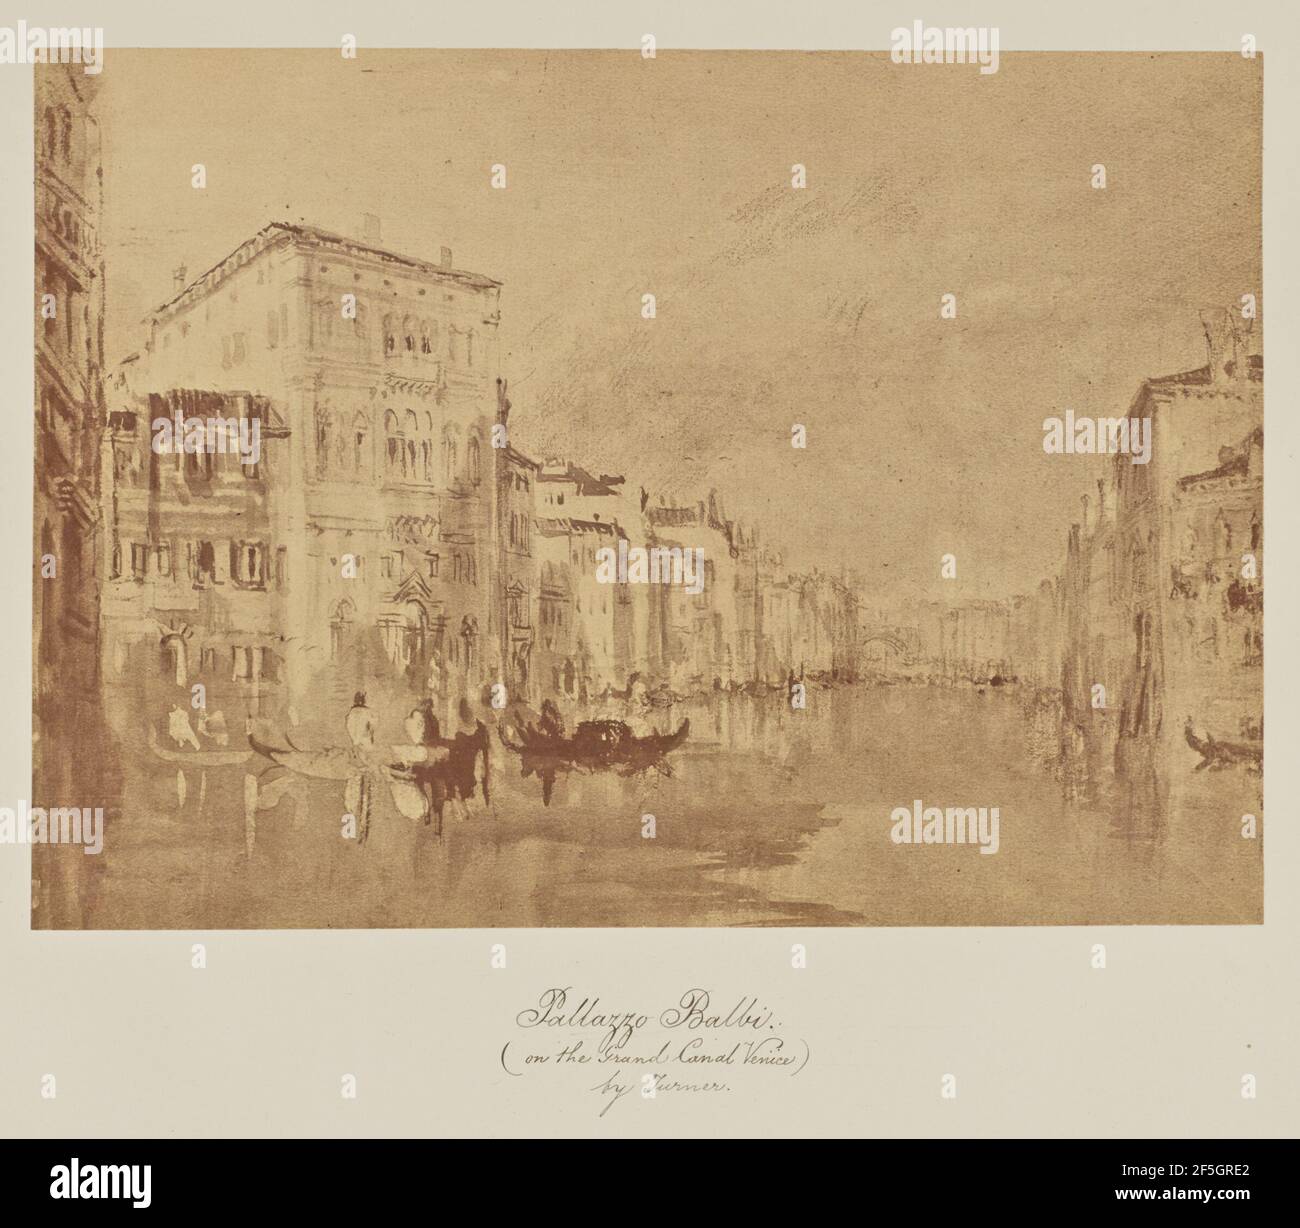 Pallazzo Balbi. (Sur le Grand Canal de Venise) par Turner. Caroline Bertolacci (britannique, née en 1825) Banque D'Images